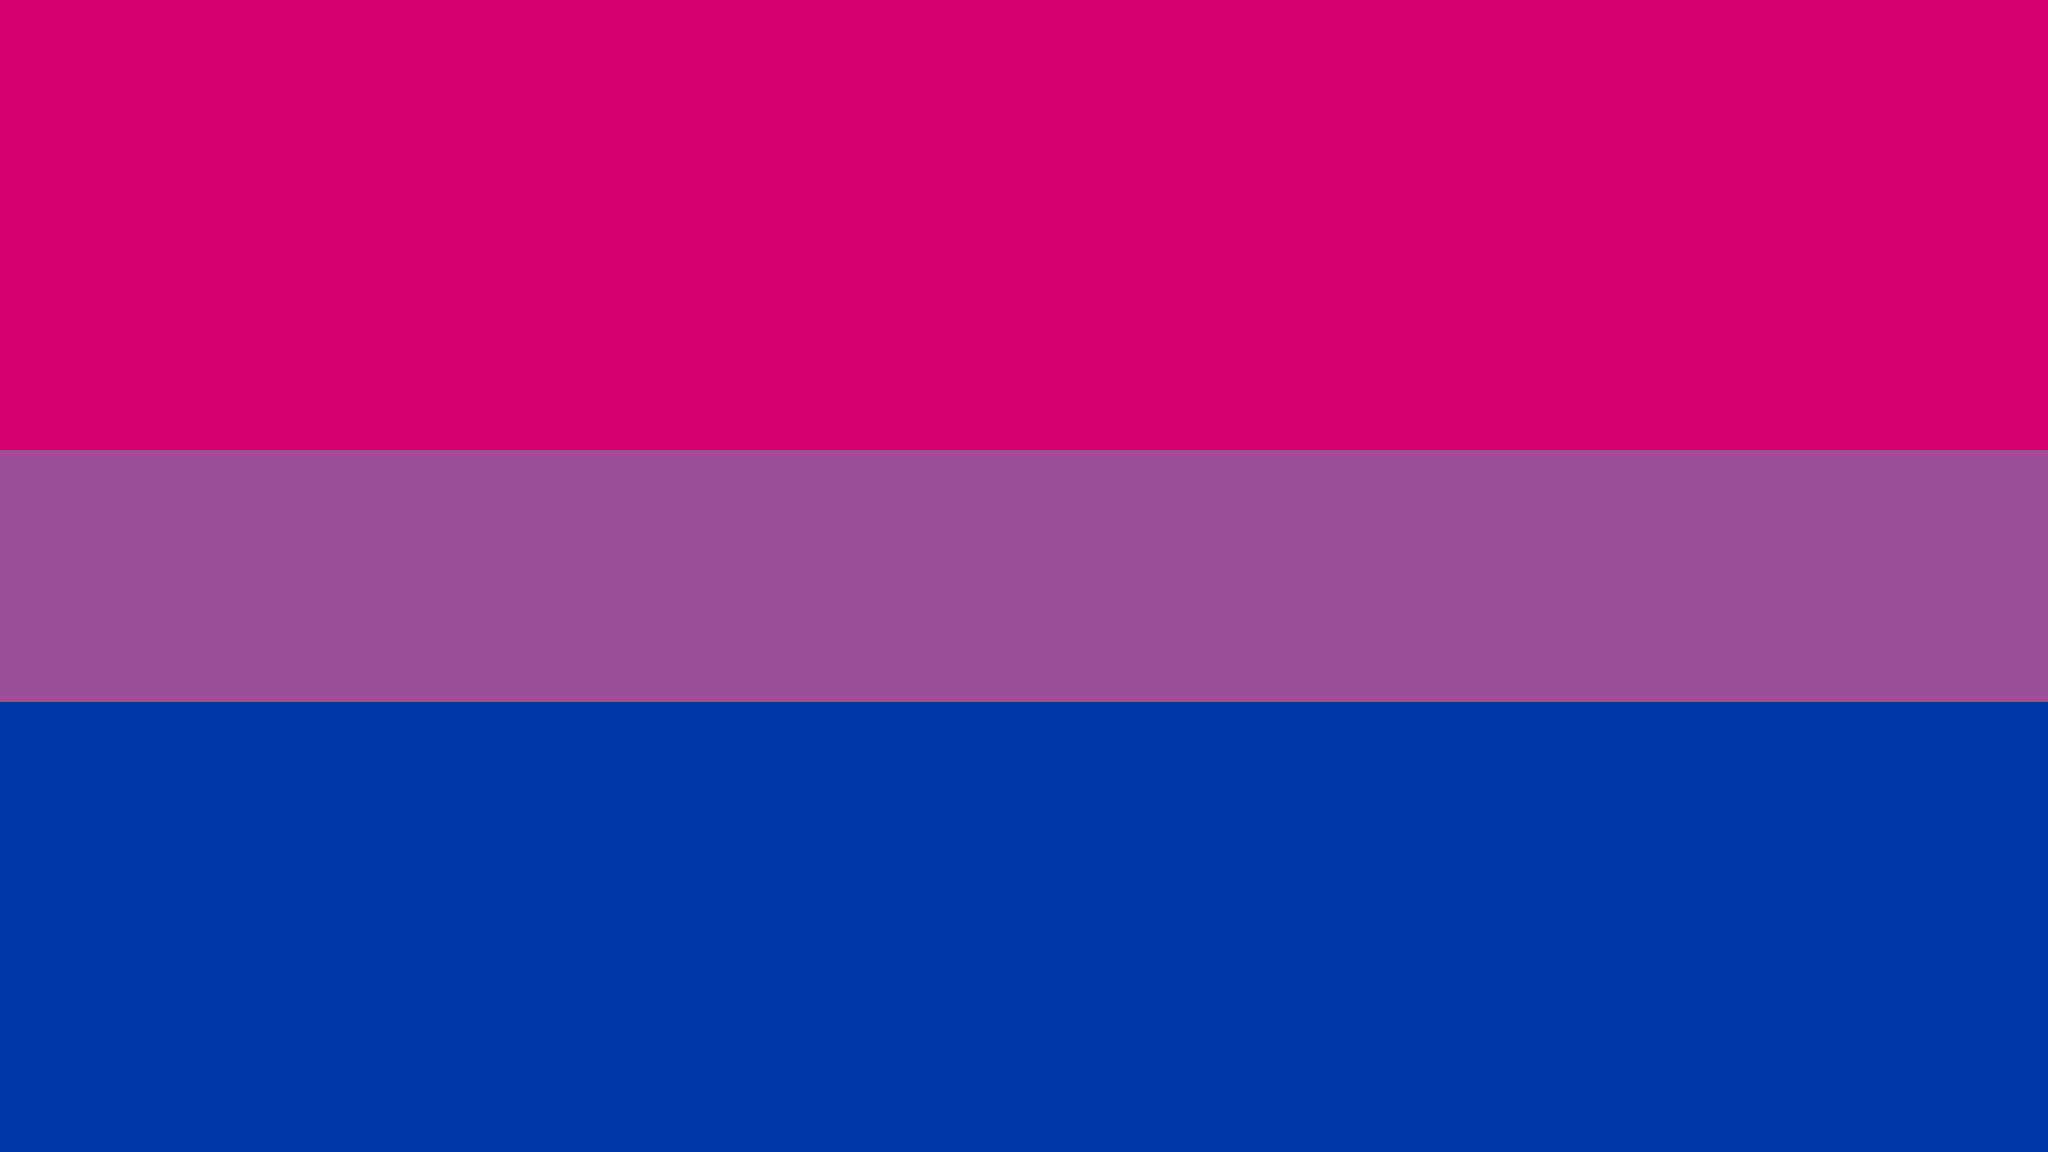 Bandera del orgullo bisexual con los colores magenta, lavanda y azul.